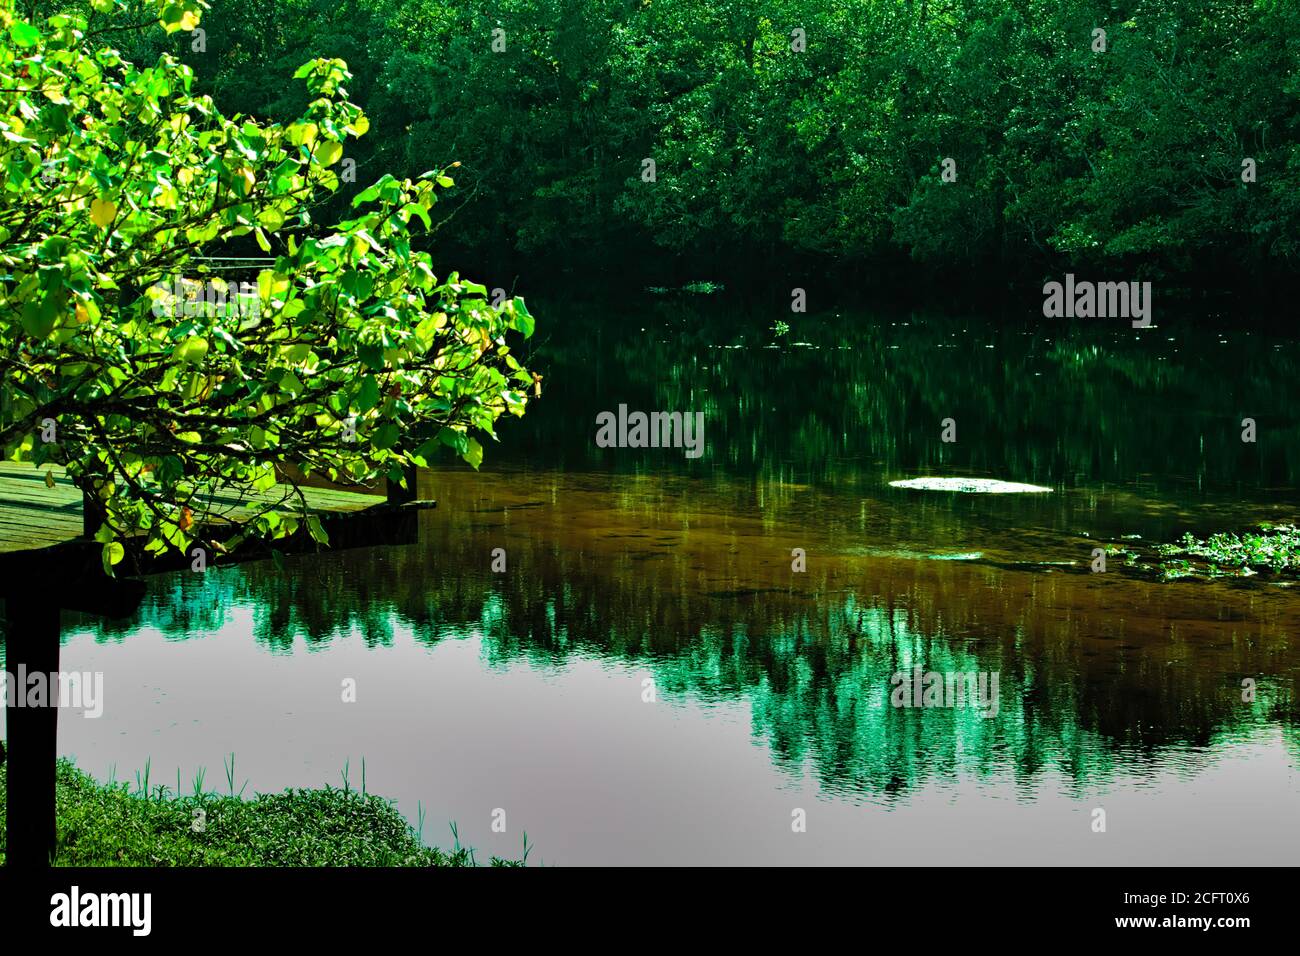 Piccolo albero che incornicia le acque trasparenti del fiume Guaratuba che riflette la vegetazione sulle sue rive. Foto Stock